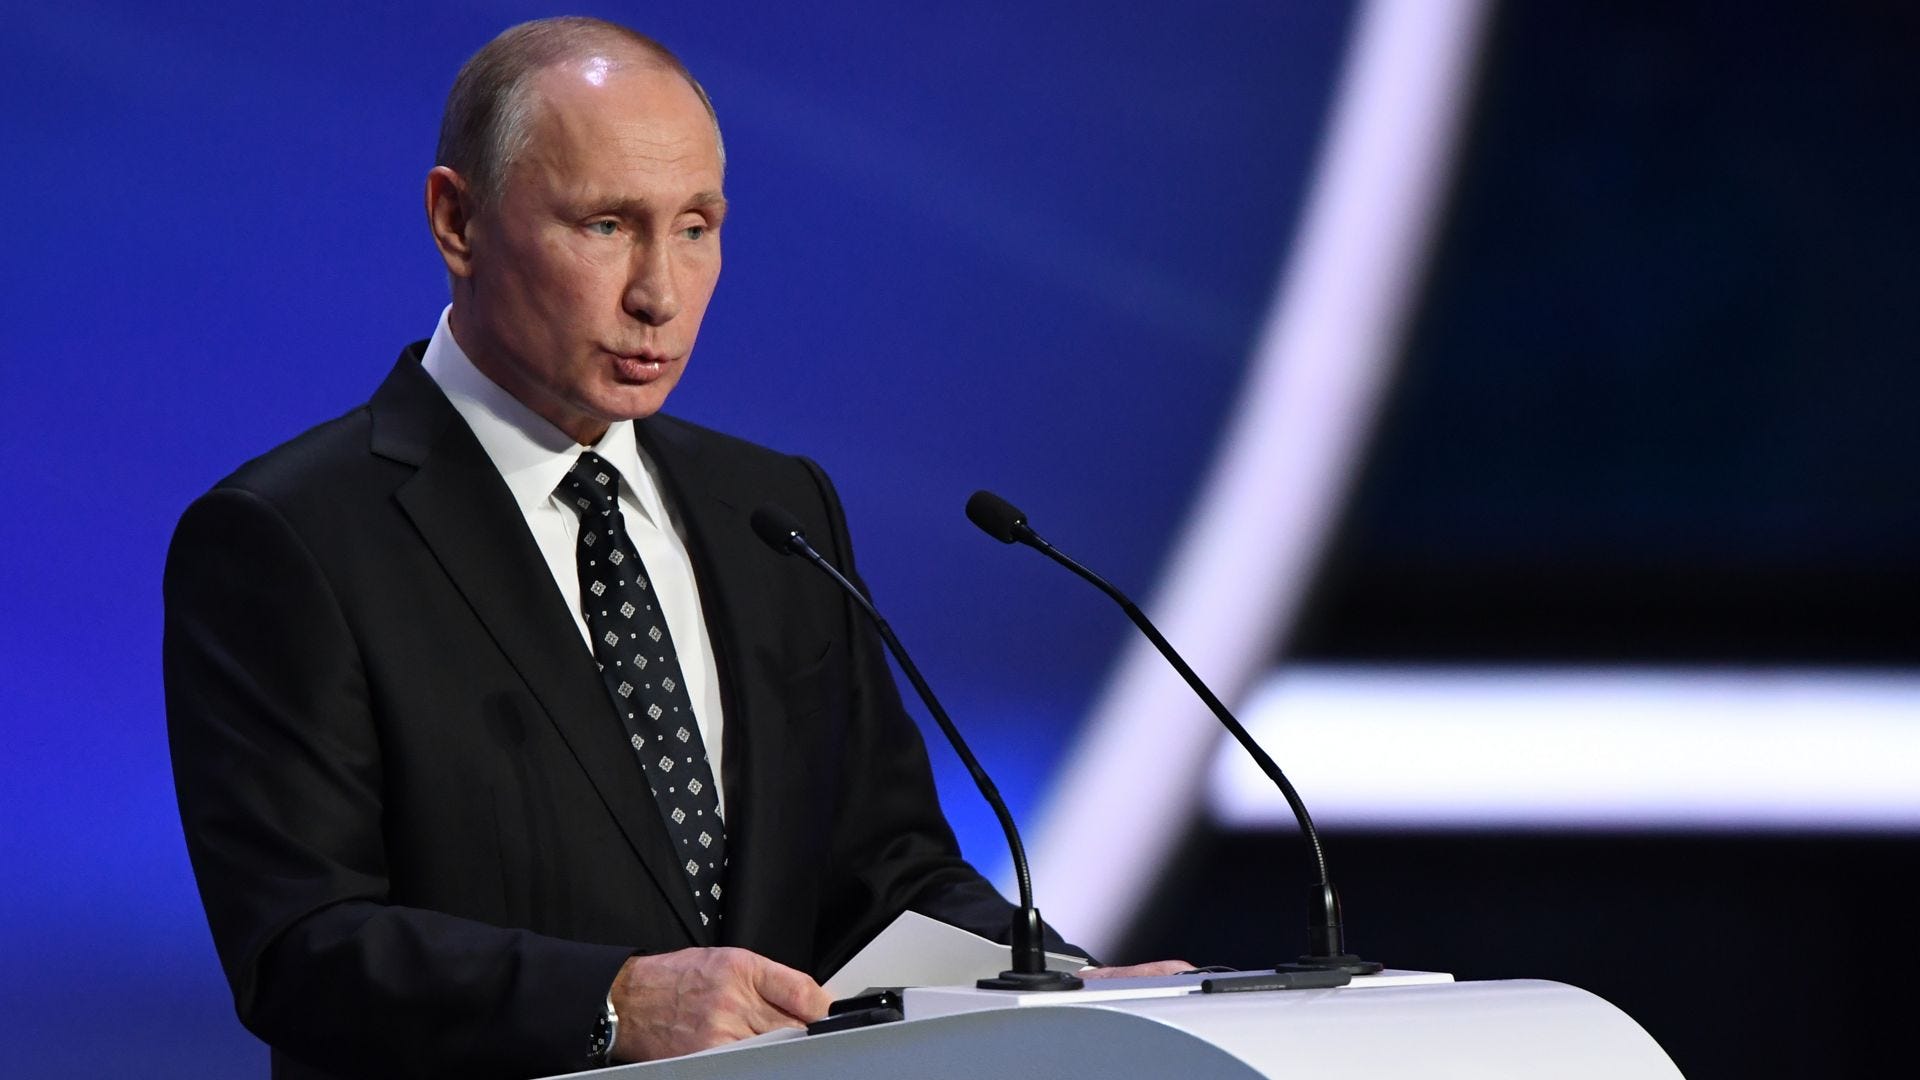 Vladimir Putin FIFA World Cup 2018 draw